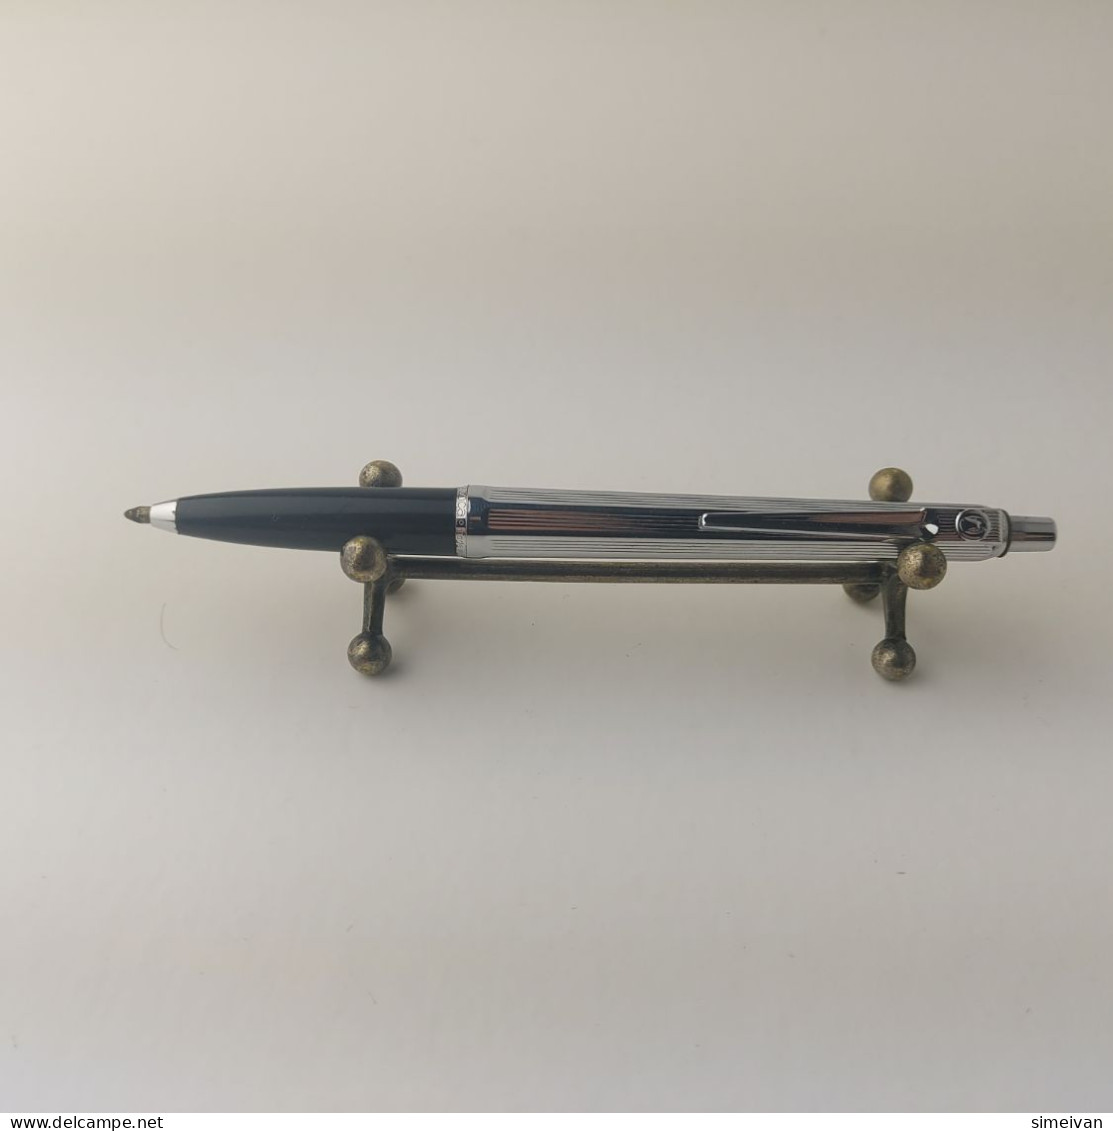 Vintage Ballograf Epoca Ballpoint Pen Black Chrome Plastic Made In Sweden #5506 - Pens